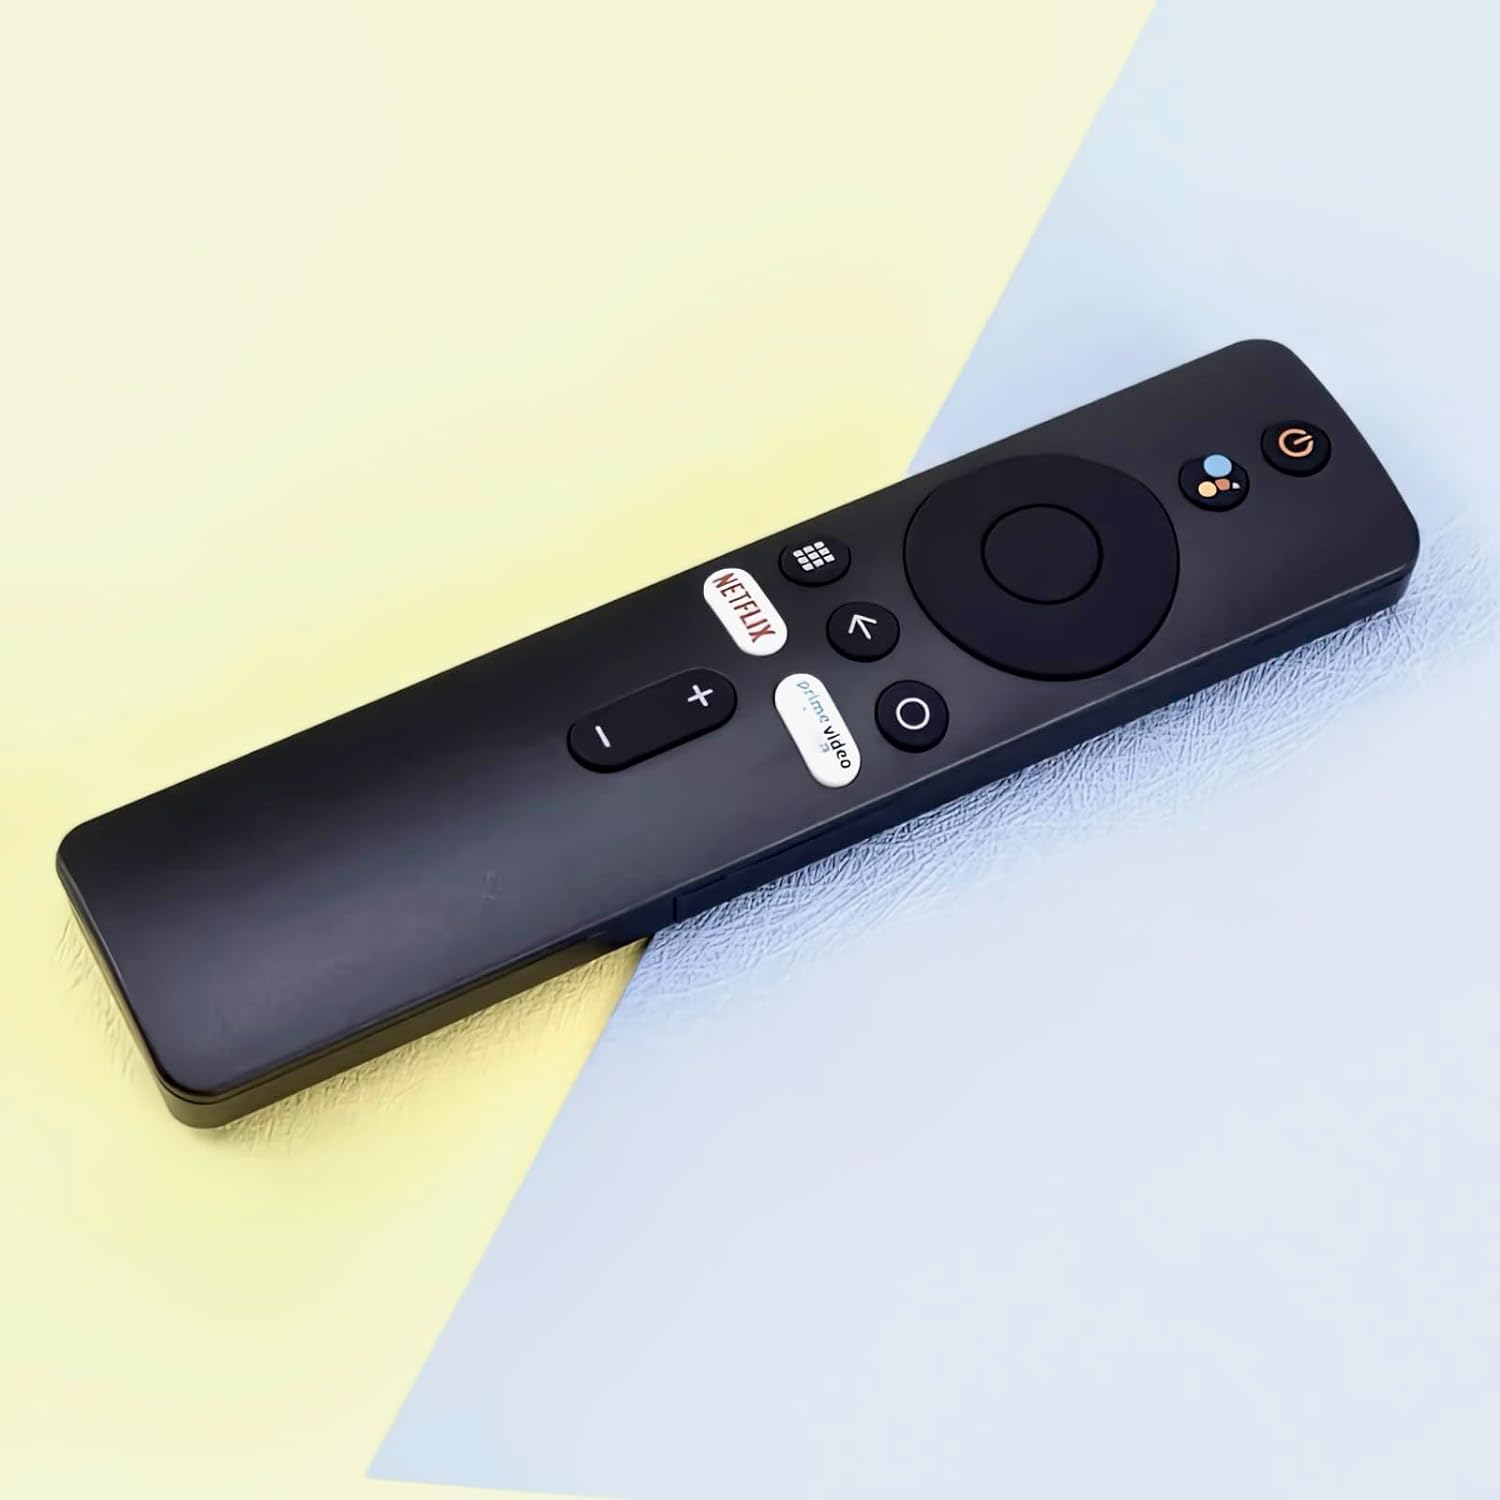 Remote Control for Xiaomi Mi TV Stick/MI Box 4S 4K, Replacement Remote Control for Xiaomi Mi TV Stick with Bluetooth and Voice Control